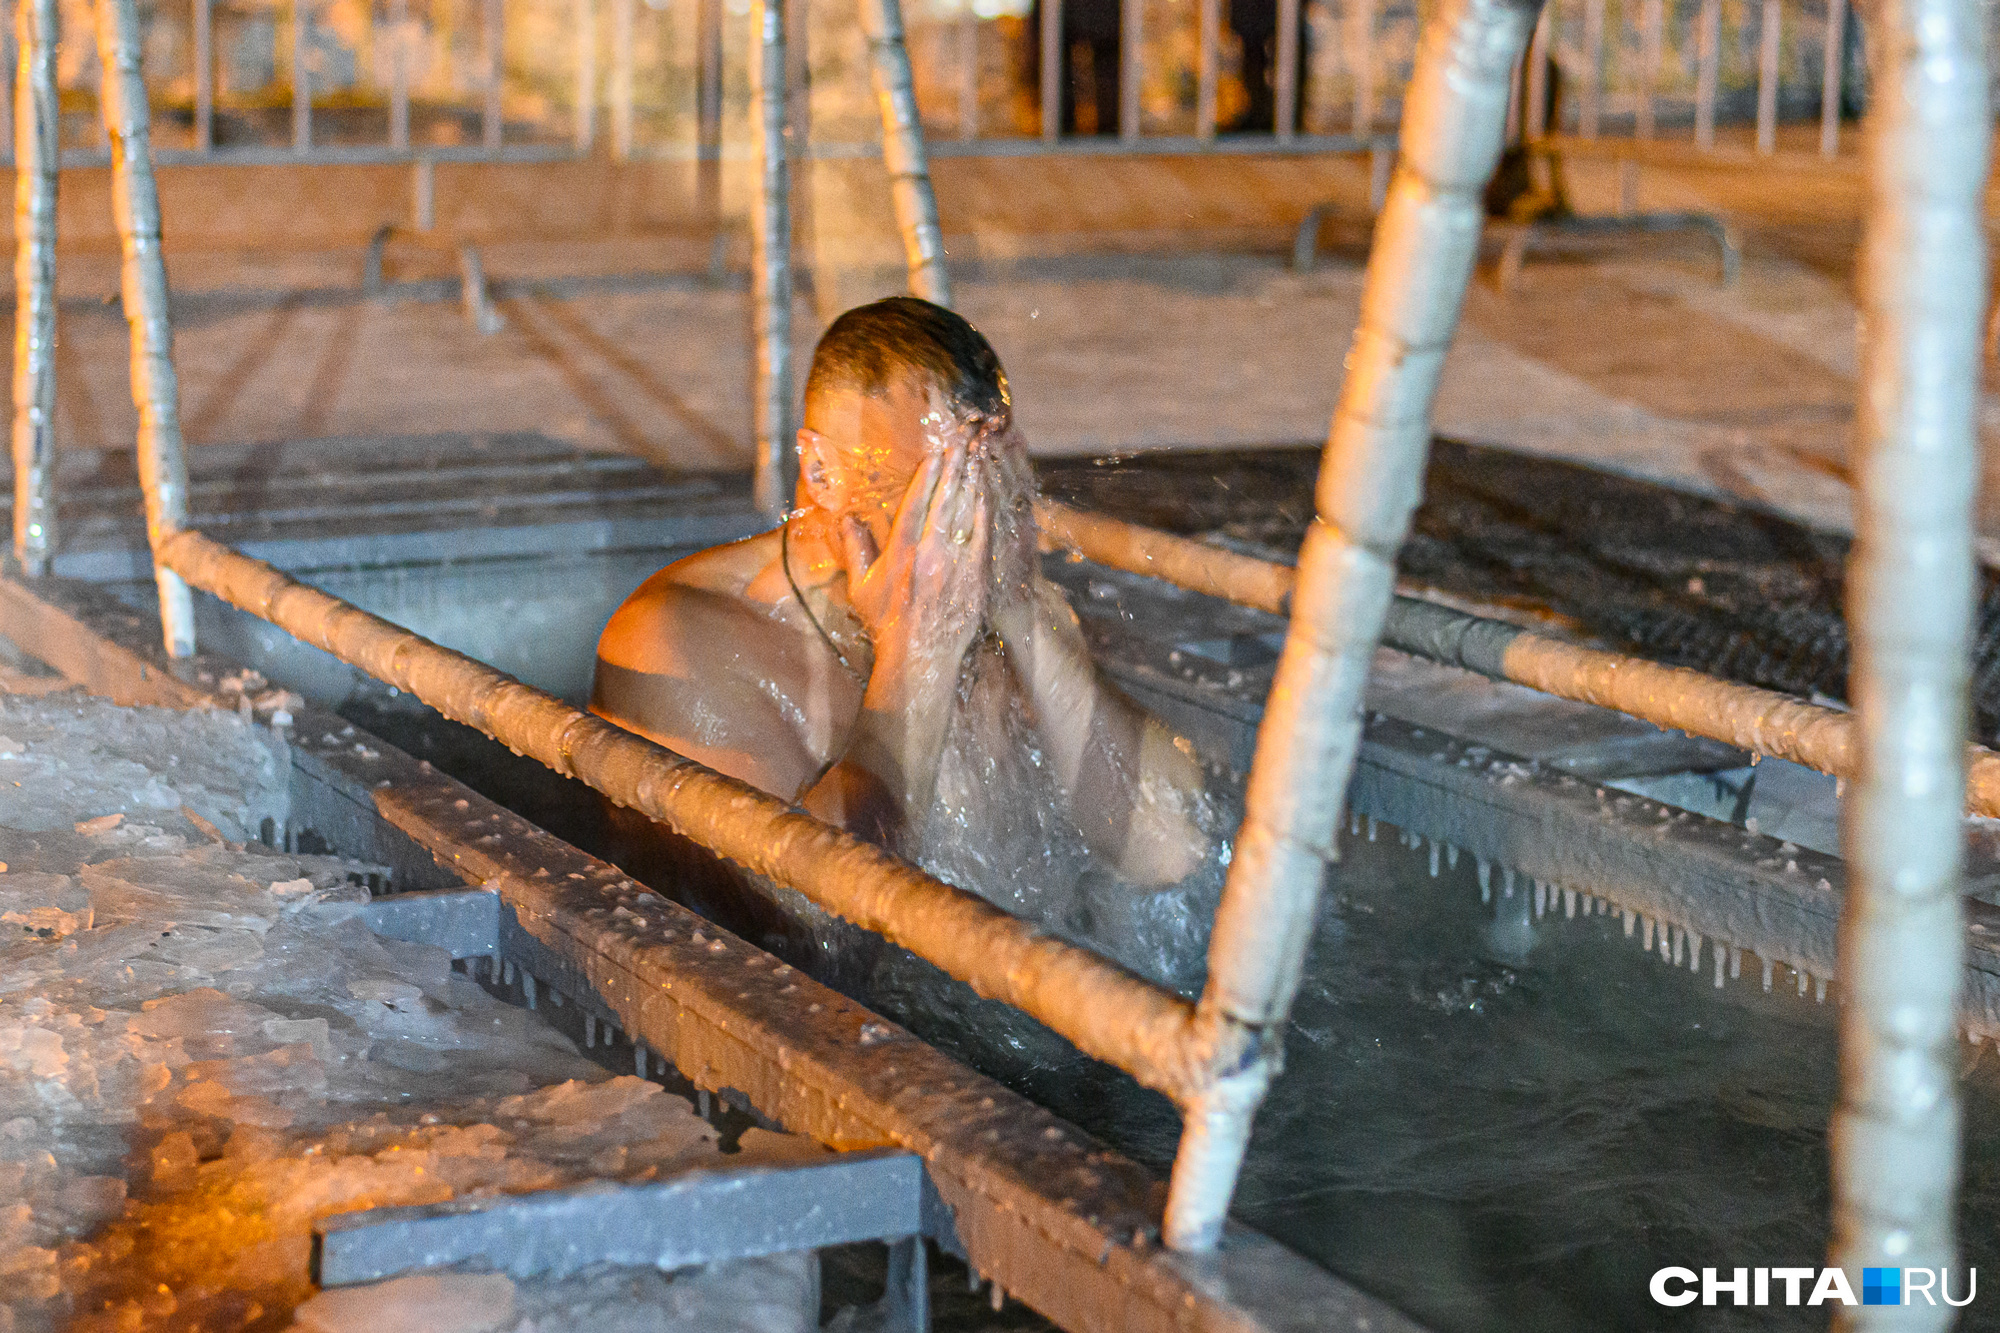 Лечебные свойства ванн: продолжительность жизни в Японии и традиции купания в термальных источниках